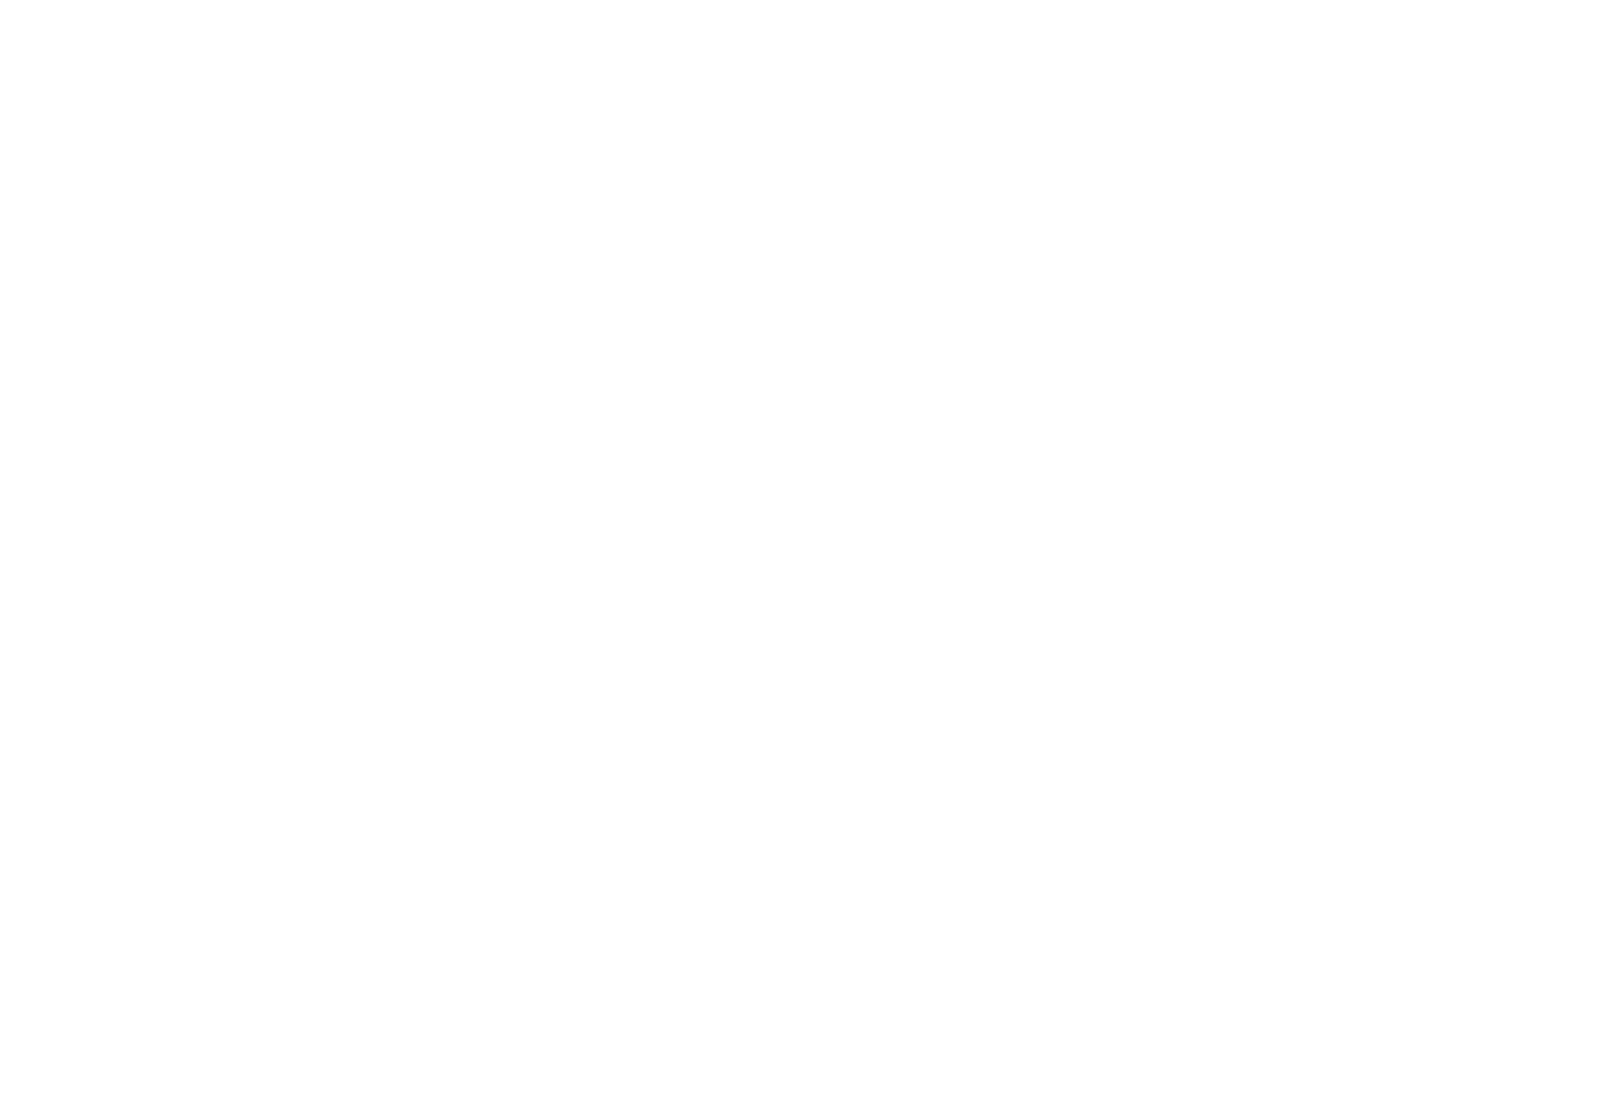 SaskLiving.com